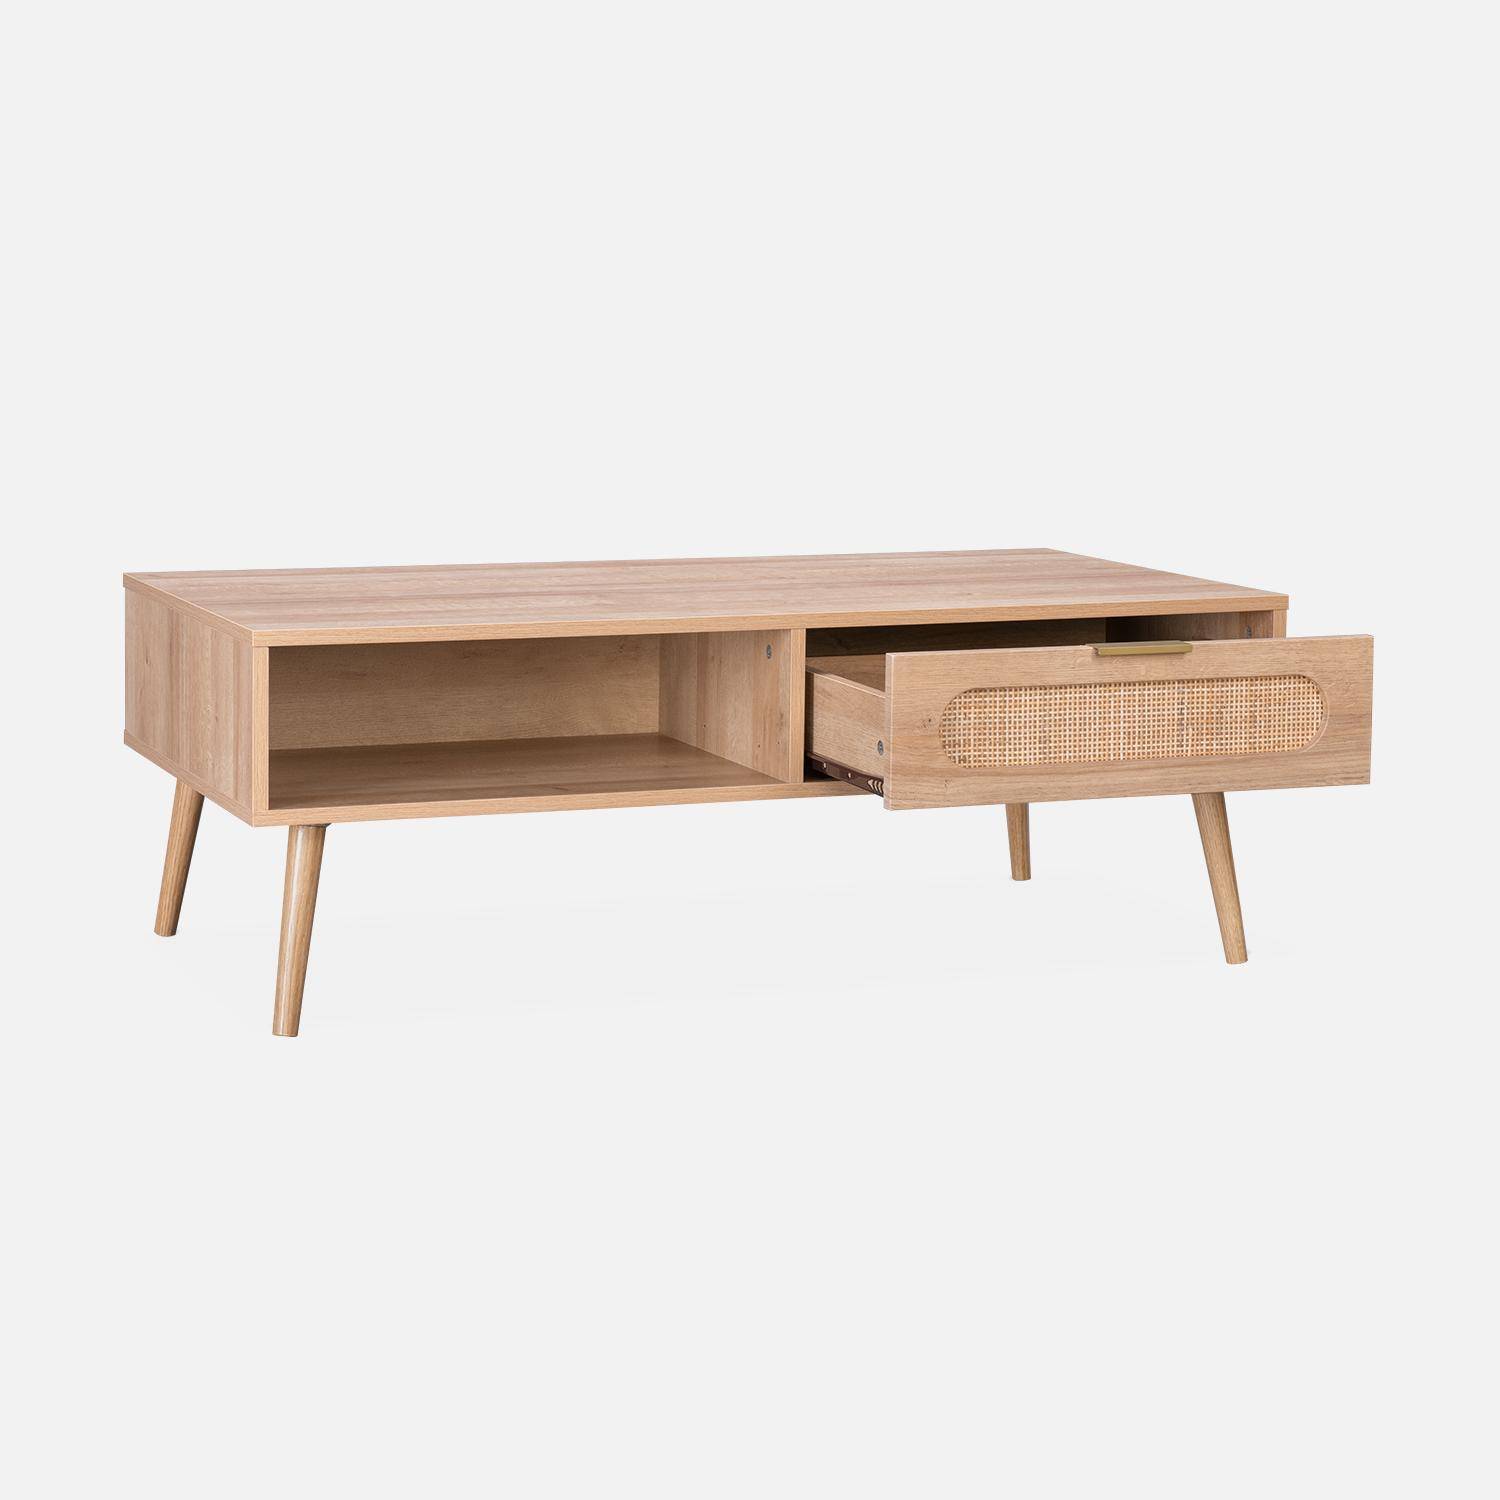 Tavolino, Eva, scandinavo in canna arrotondata e legno, 1 cassetto reversibile L110 x L59 x H39cm Photo6